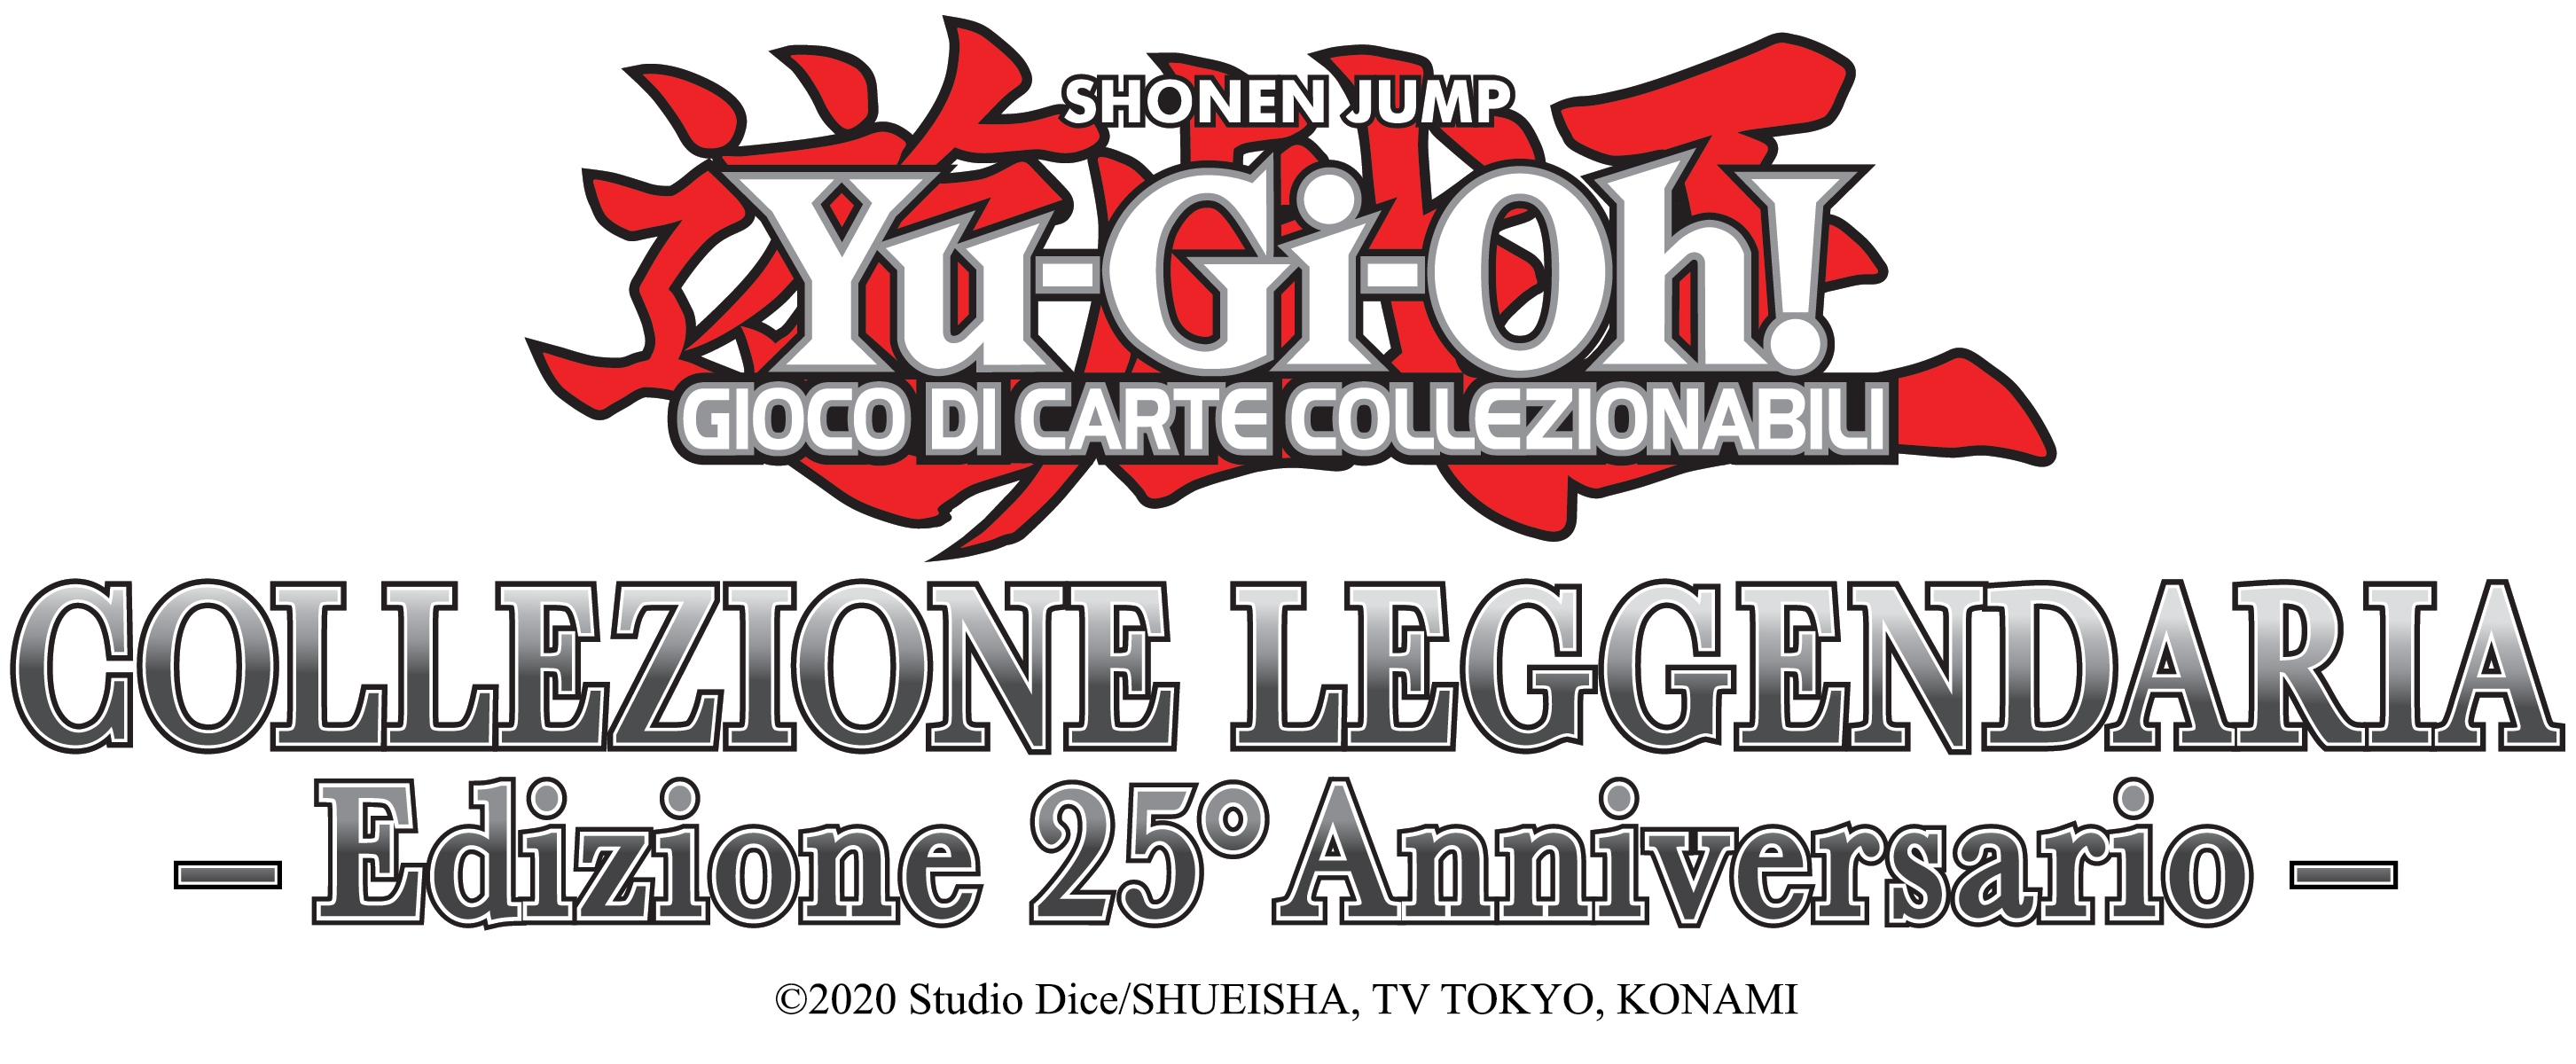 Yu-Gi-Oh! gioco di carte collezionabili con Collezione Leggendaria: Edizione 25° Anniversario